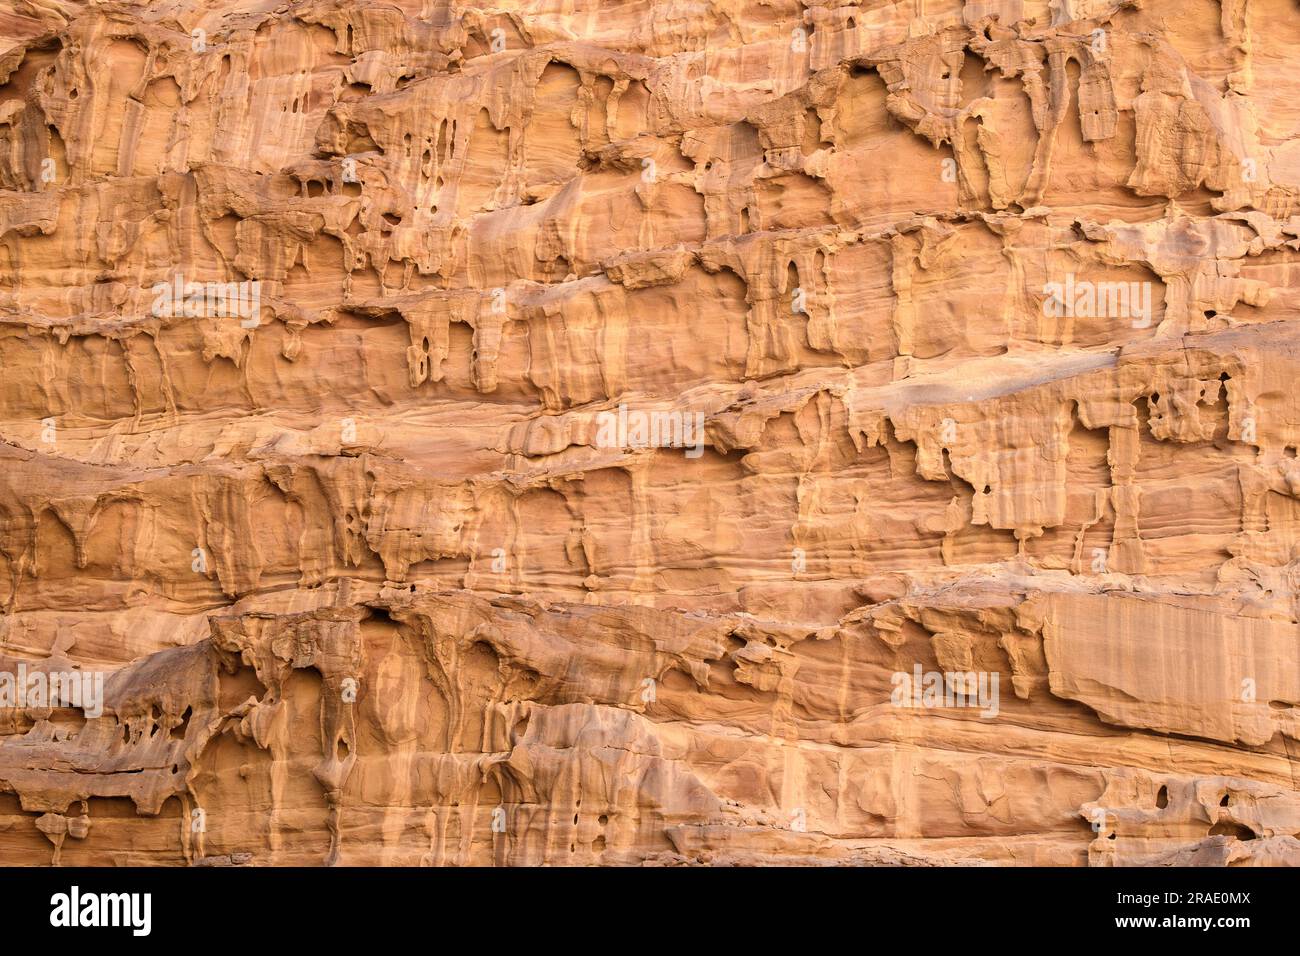 Arabische Wüste. Wadi Rum. Felsformation. Nahaufnahme. Muster. Hintergrund. Stockfoto